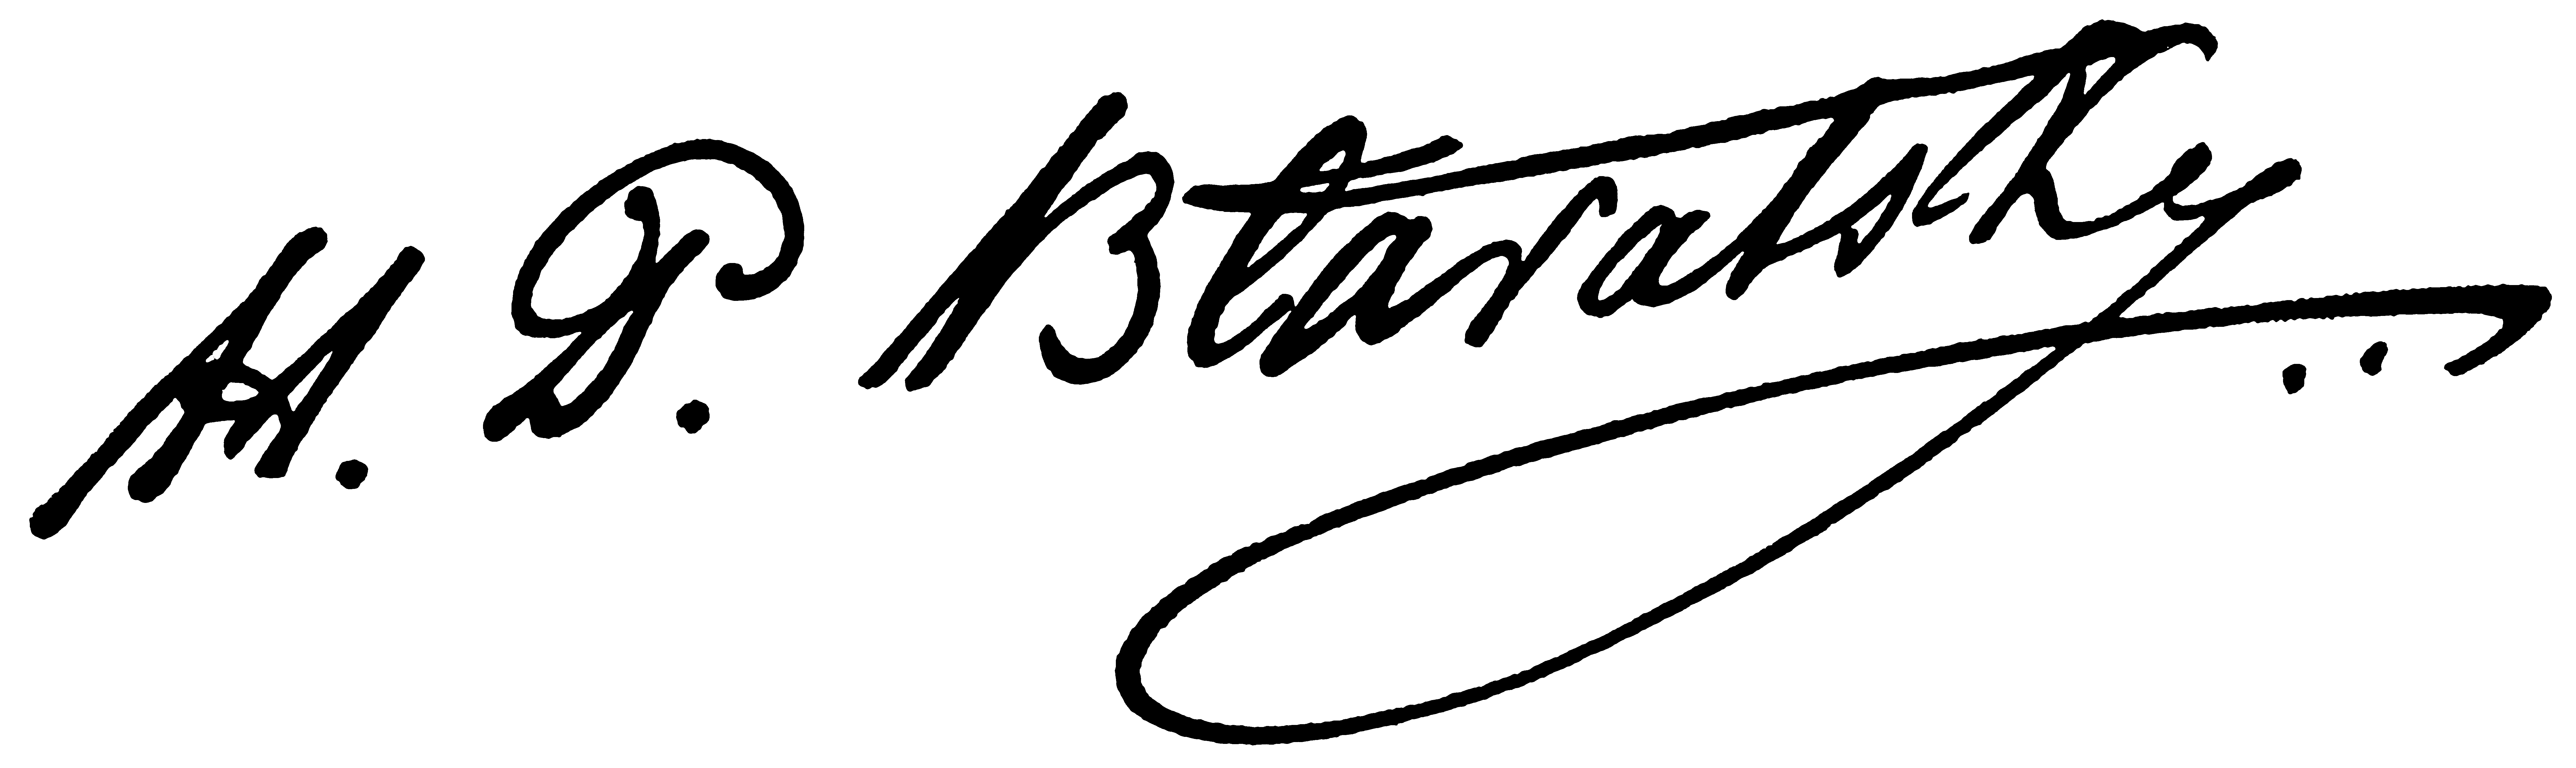 HOBlavatsky Unterschrift